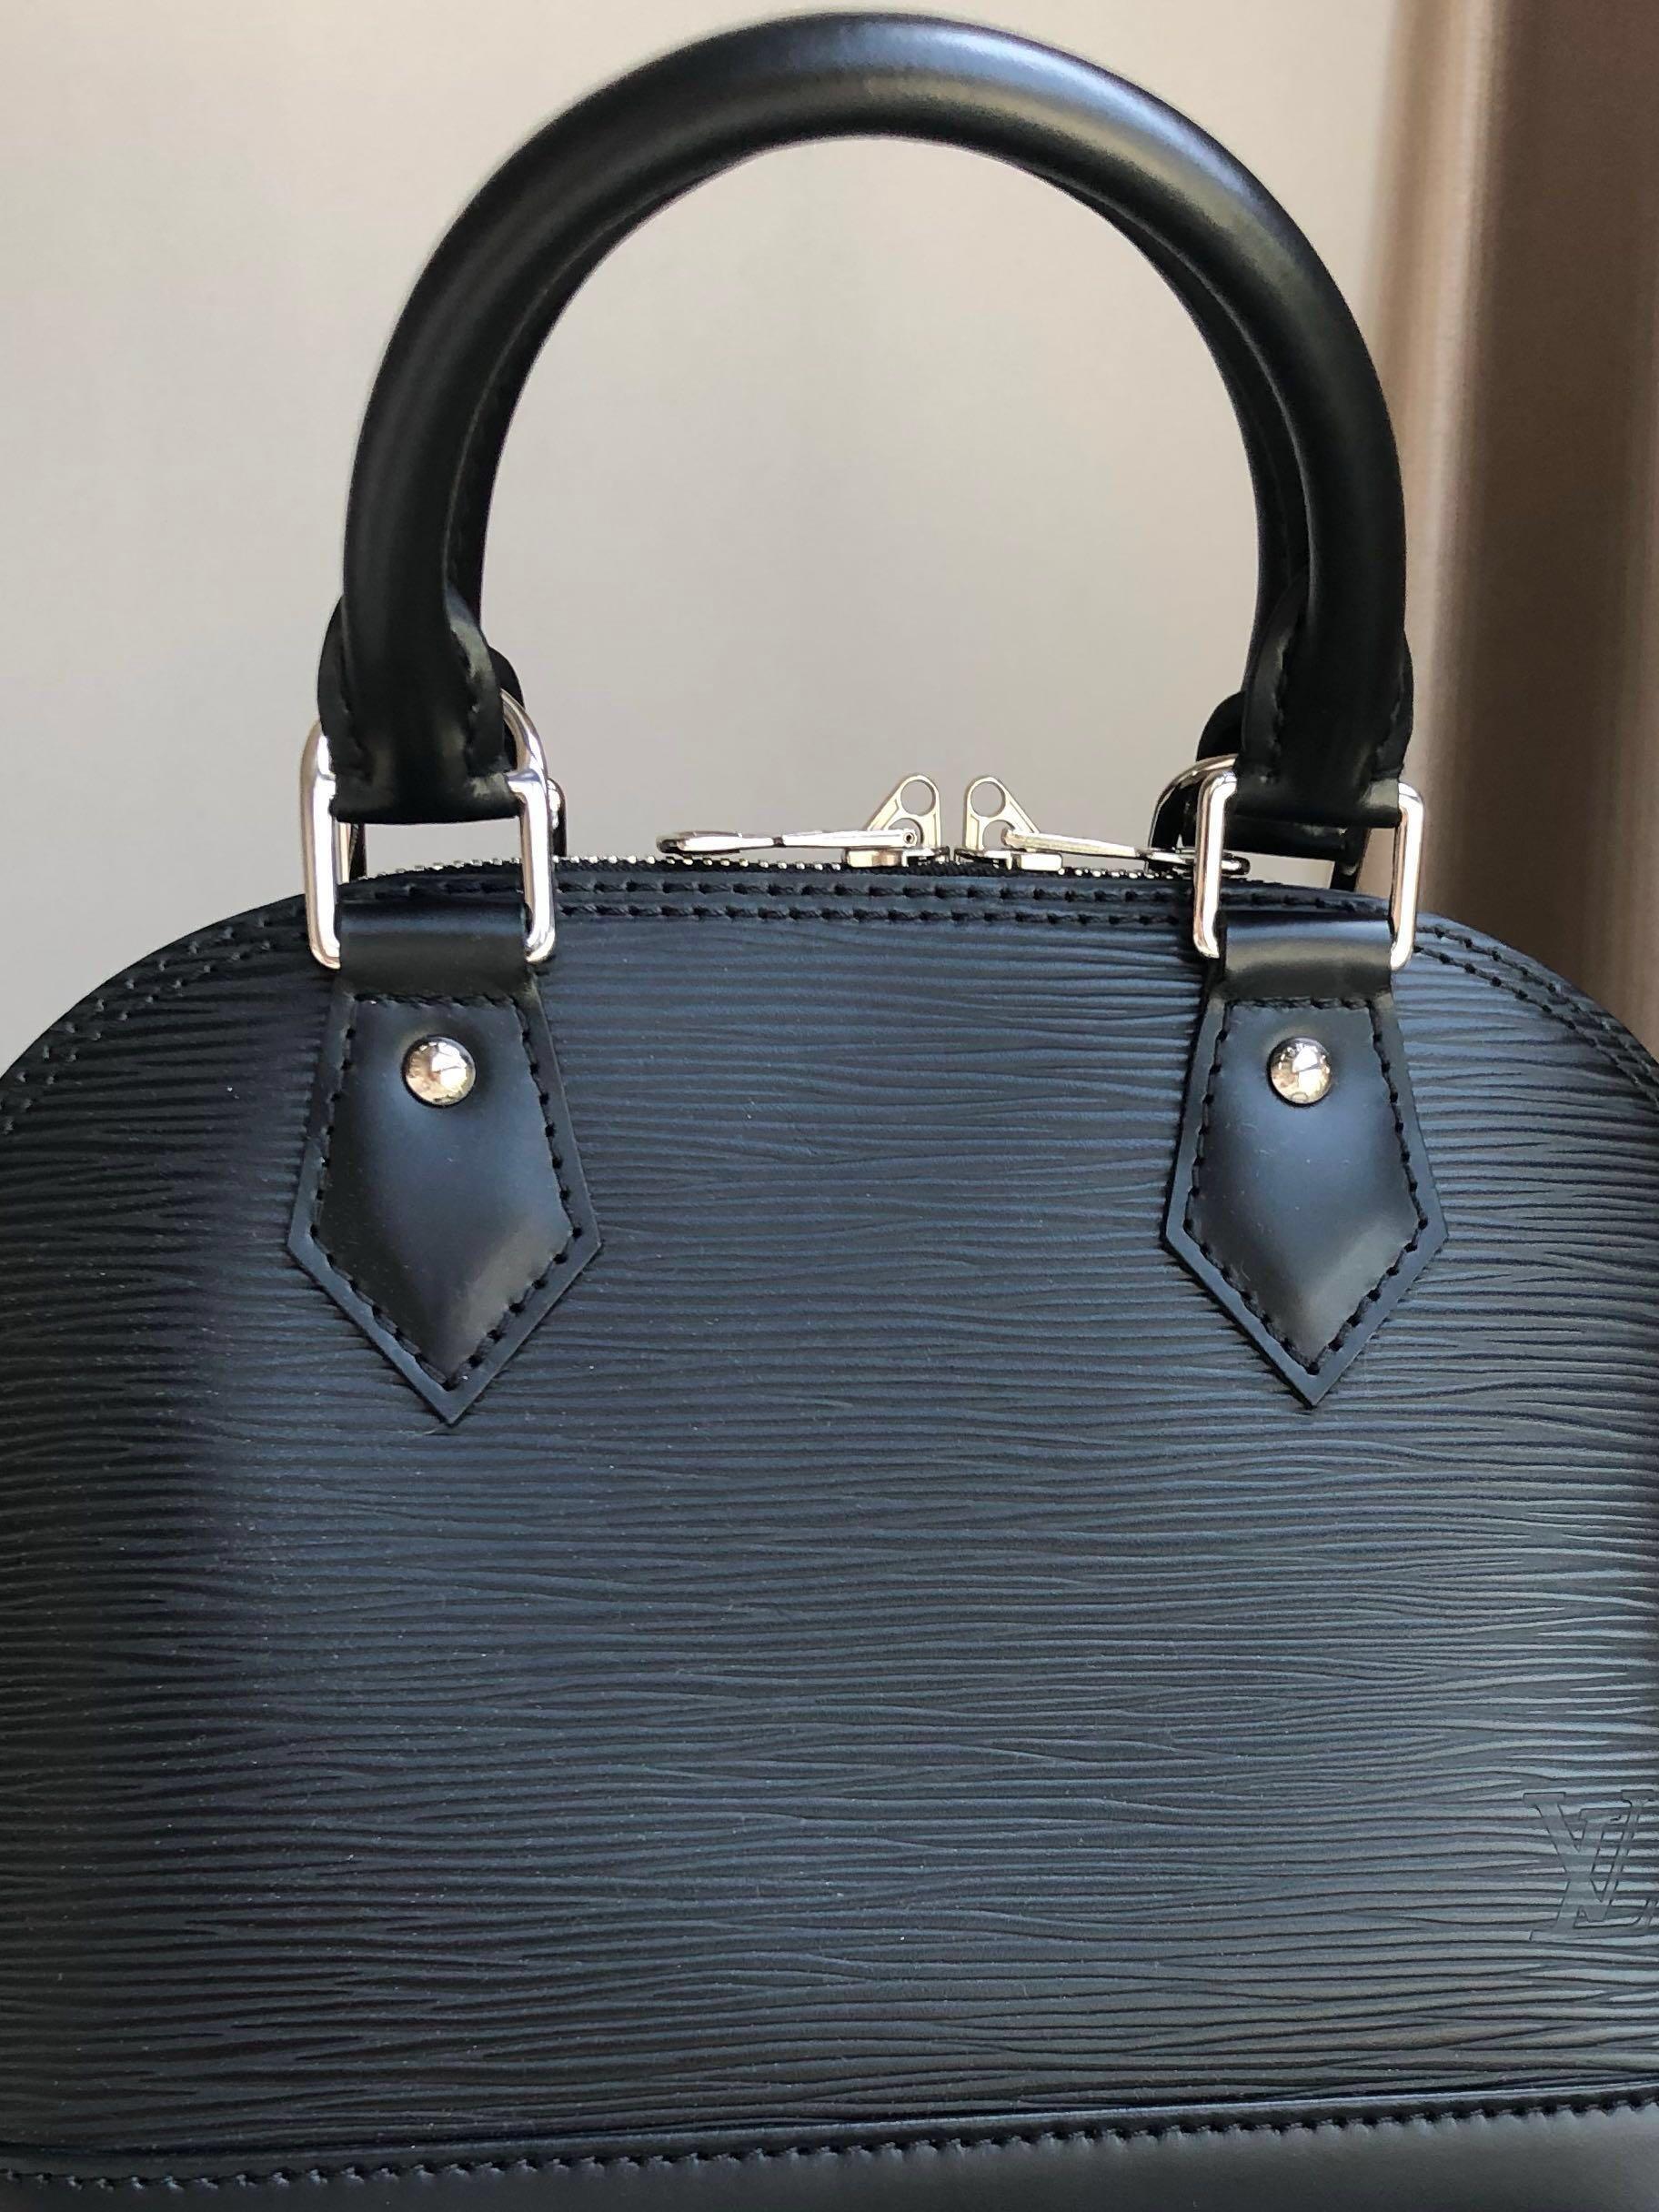 Louis Vuitton - Alma PM - Black Epi Leather - SHW - 2018